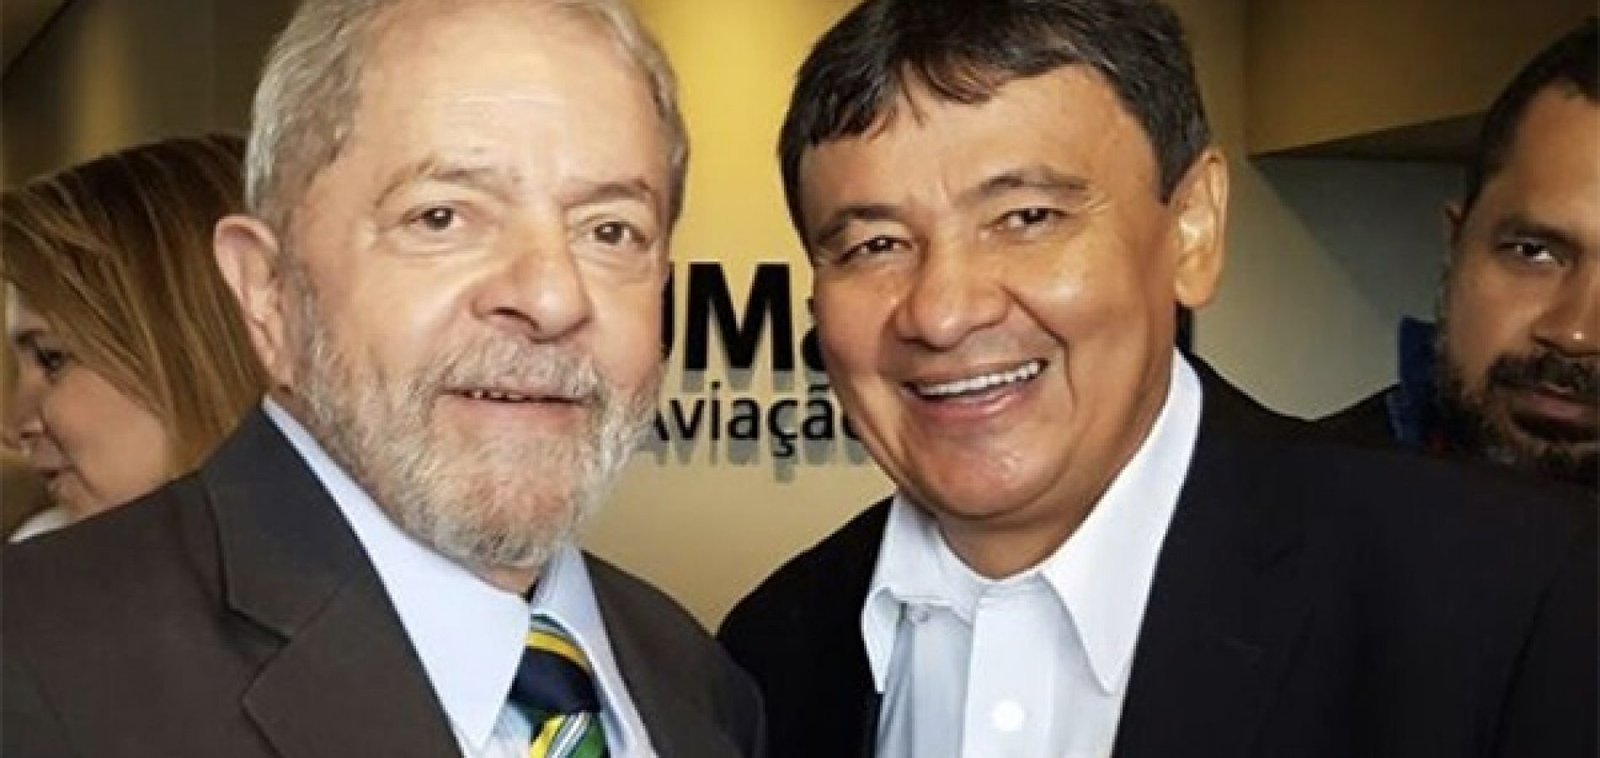 Wellington Dias confirma vinda do ex-presidente Lula ao Piauí